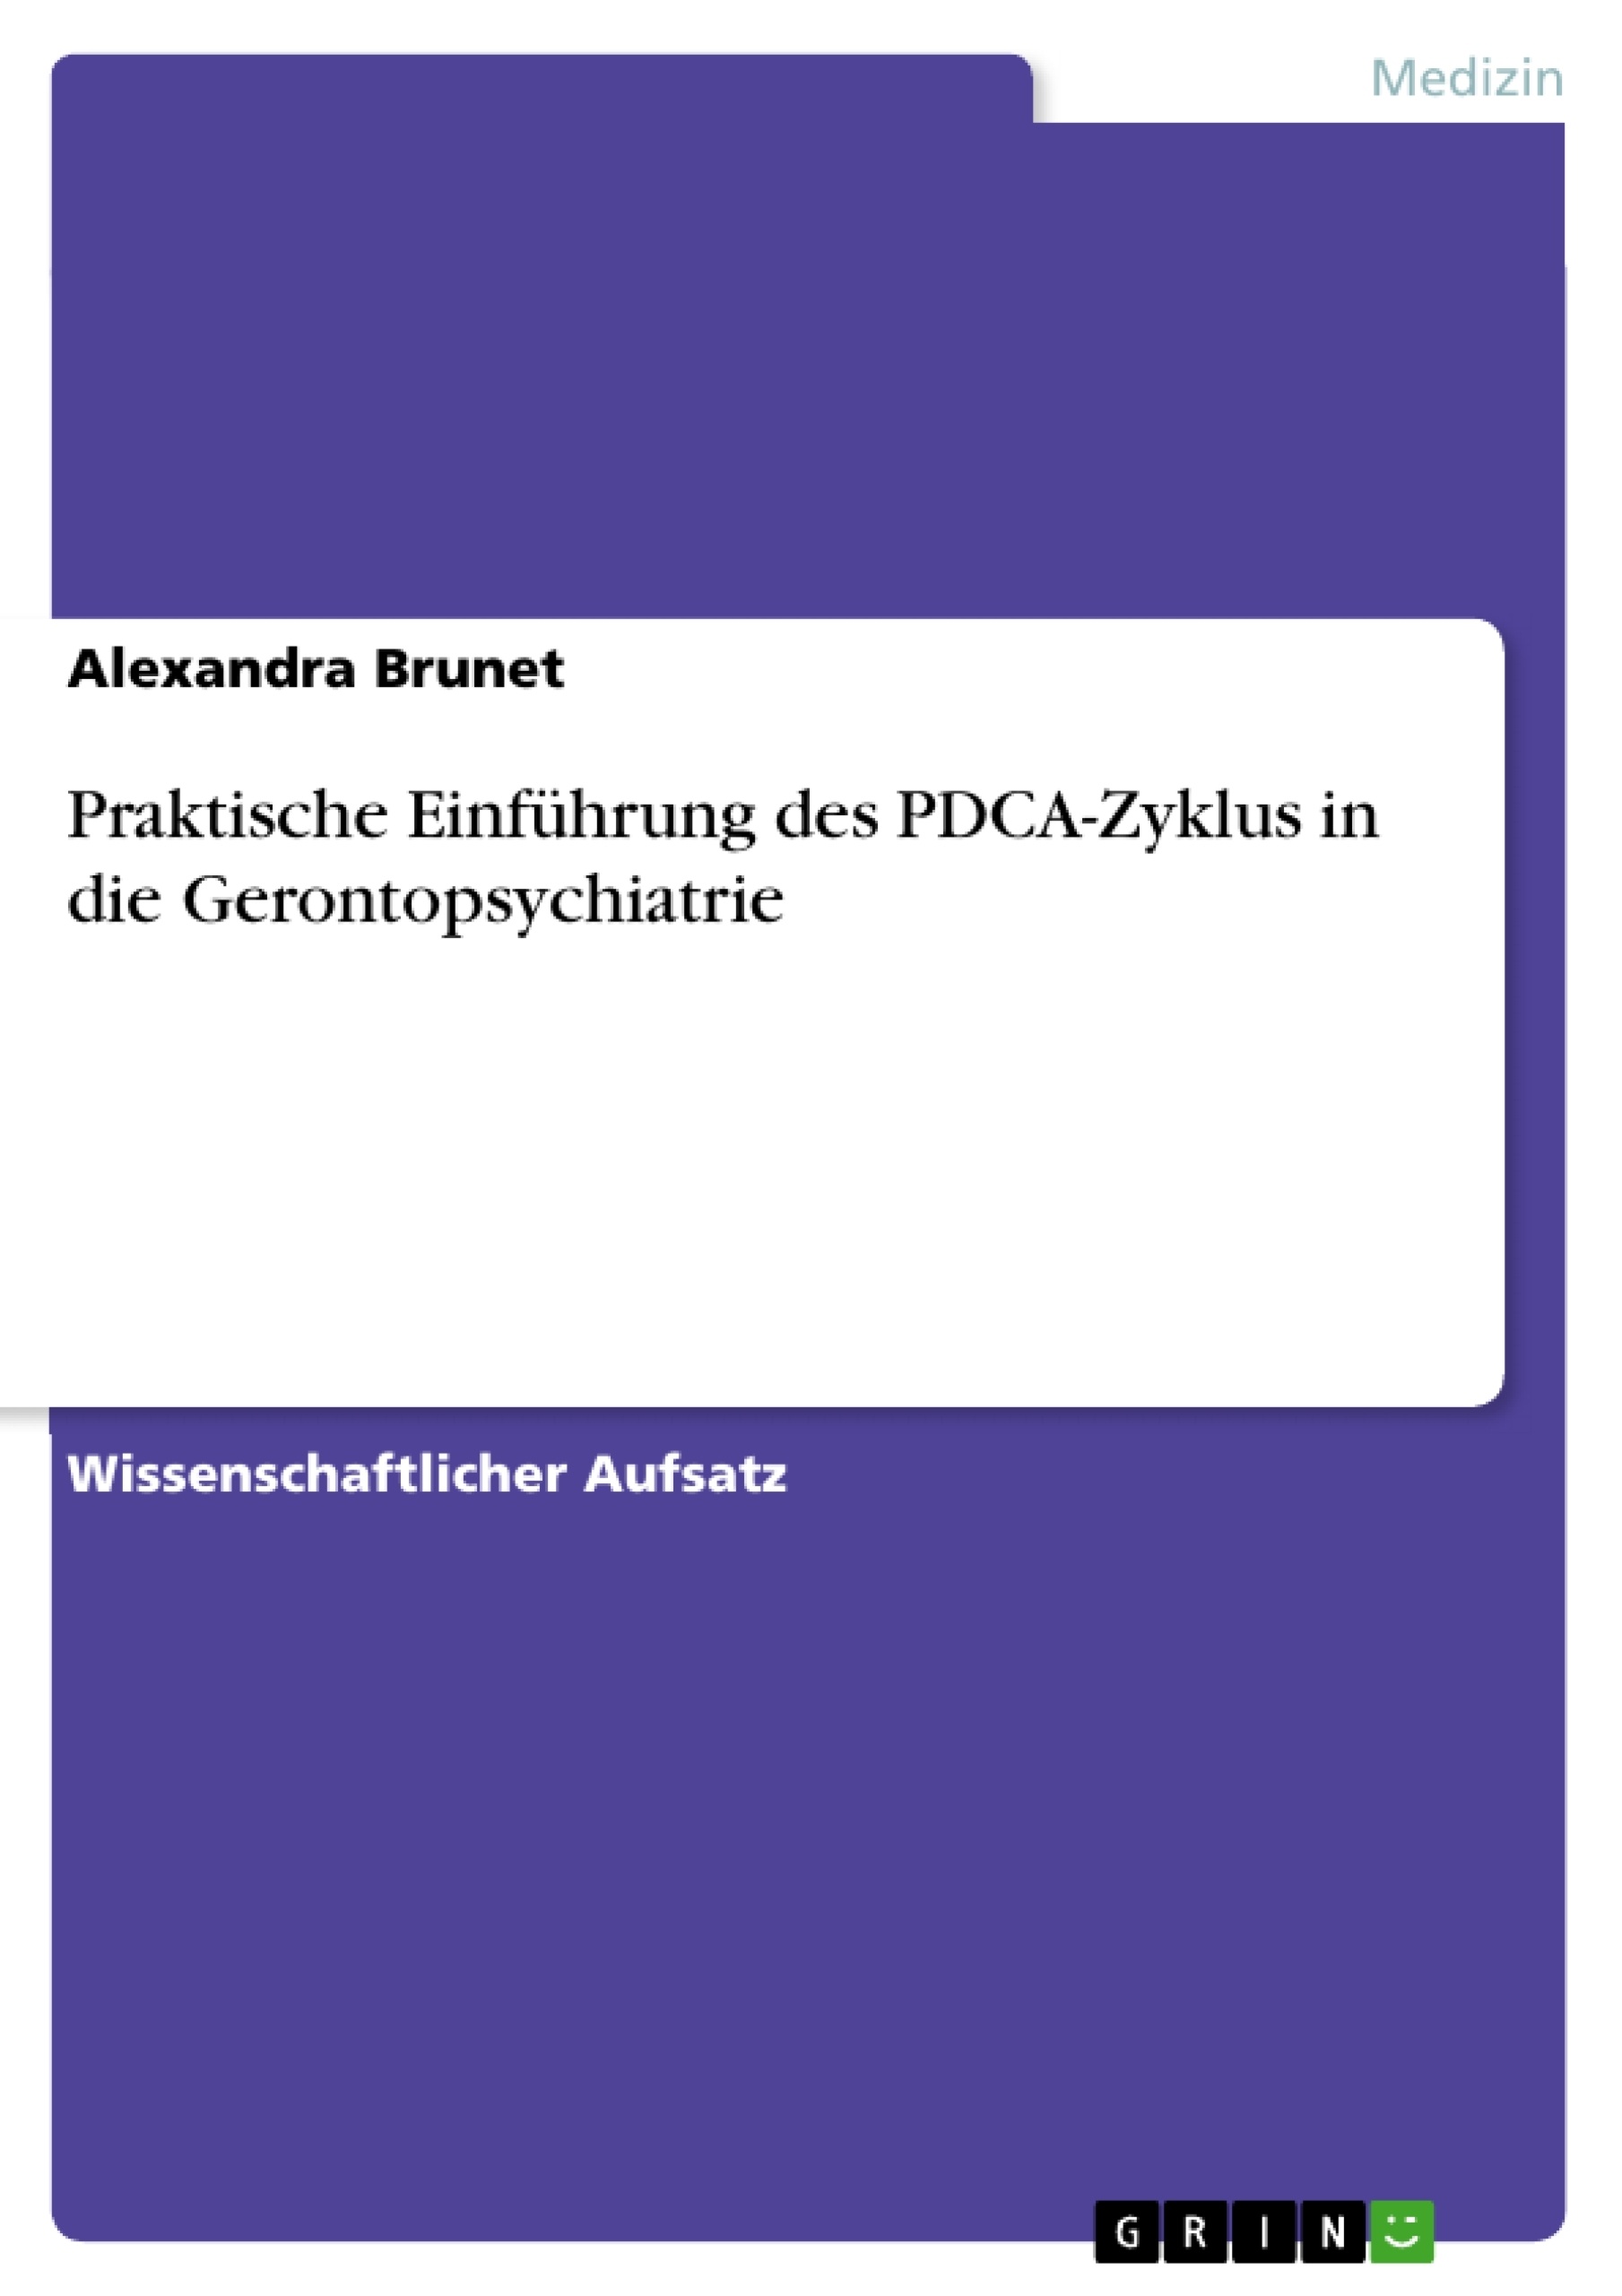 Title: Praktische Einführung des PDCA-Zyklus in die Gerontopsychiatrie